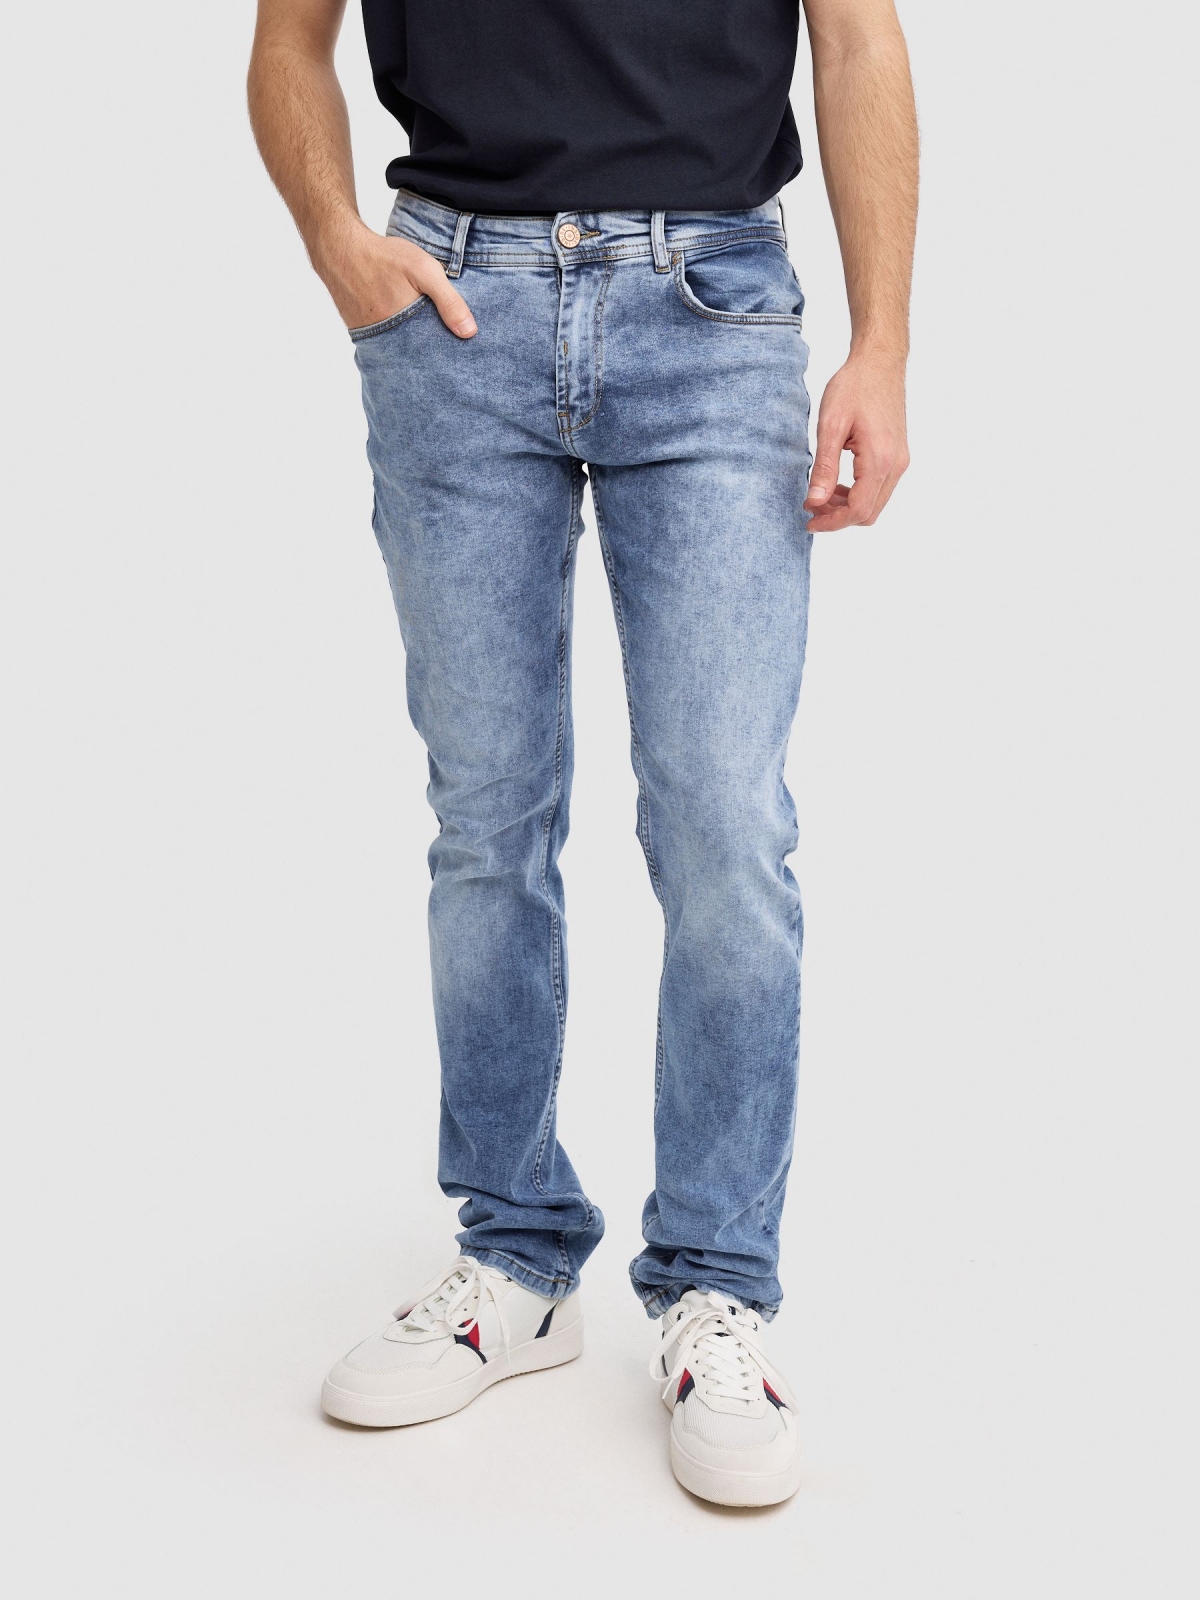 Jeans regular lavado azul vista media frontal